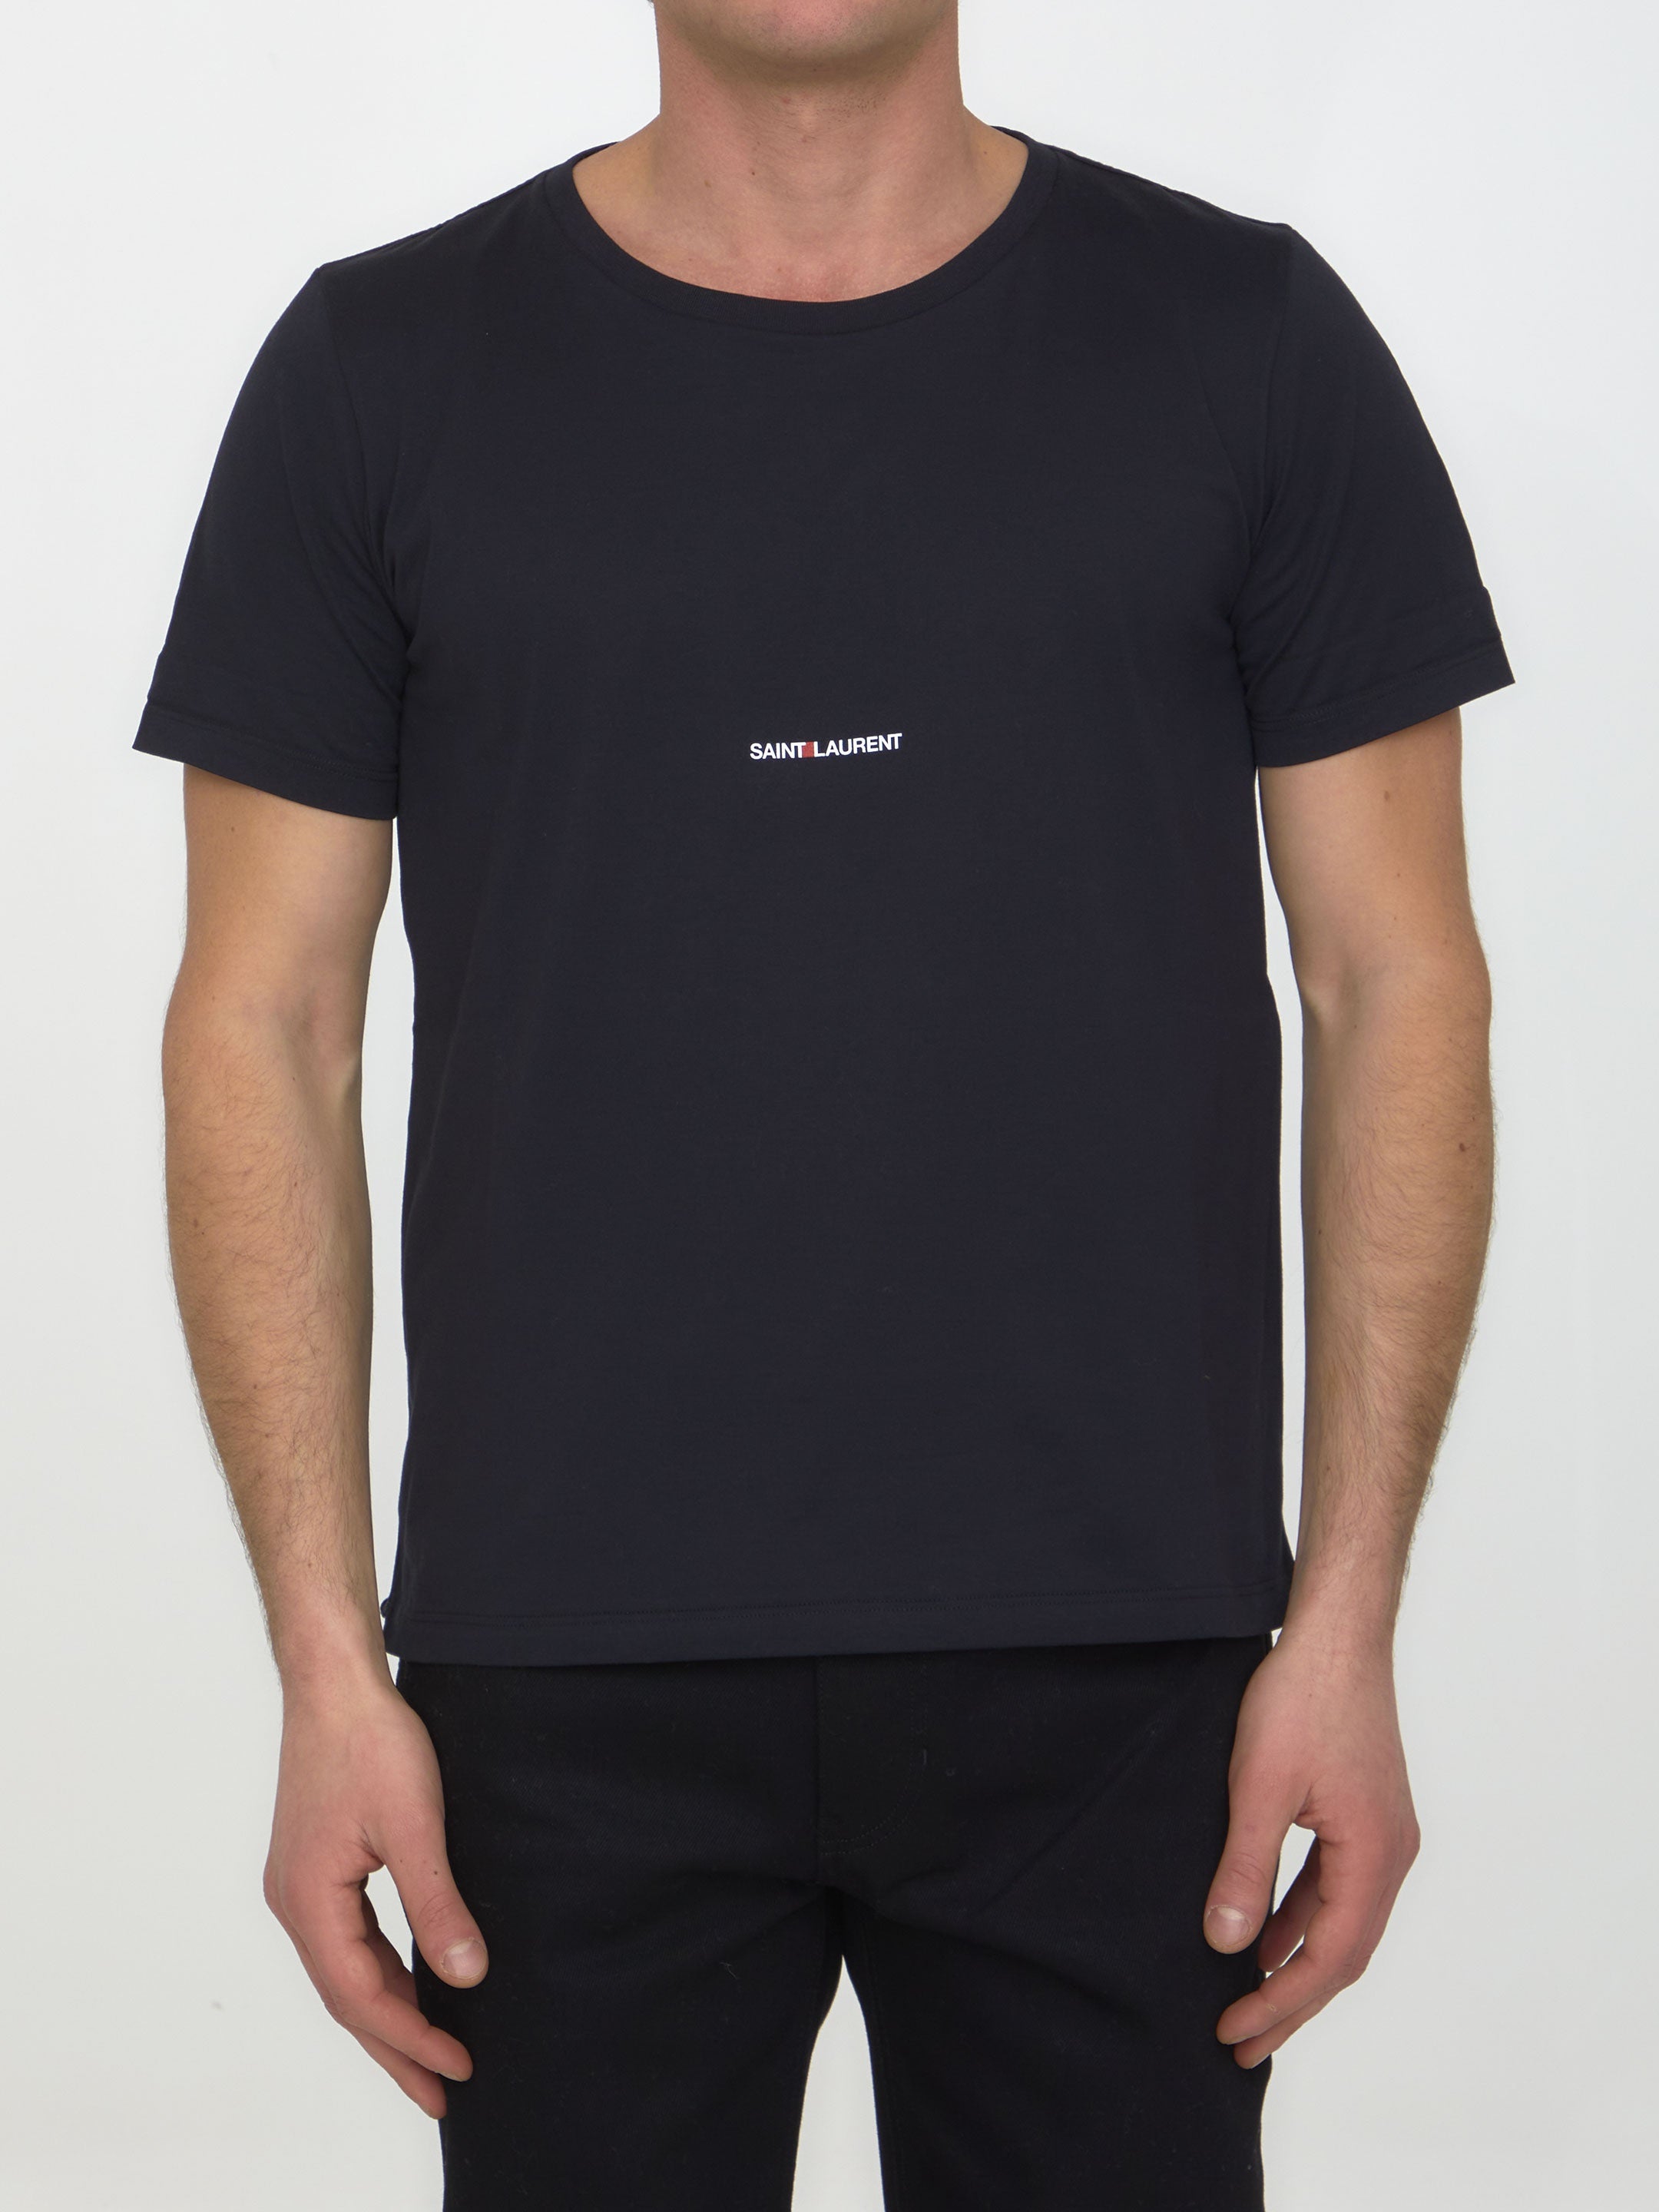 SAINT-LAURENT-OUTLET-SALE-Cotton-t-shirt-with-logo-Shirts-L-BLACK-ARCHIVE-COLLECTION.jpg